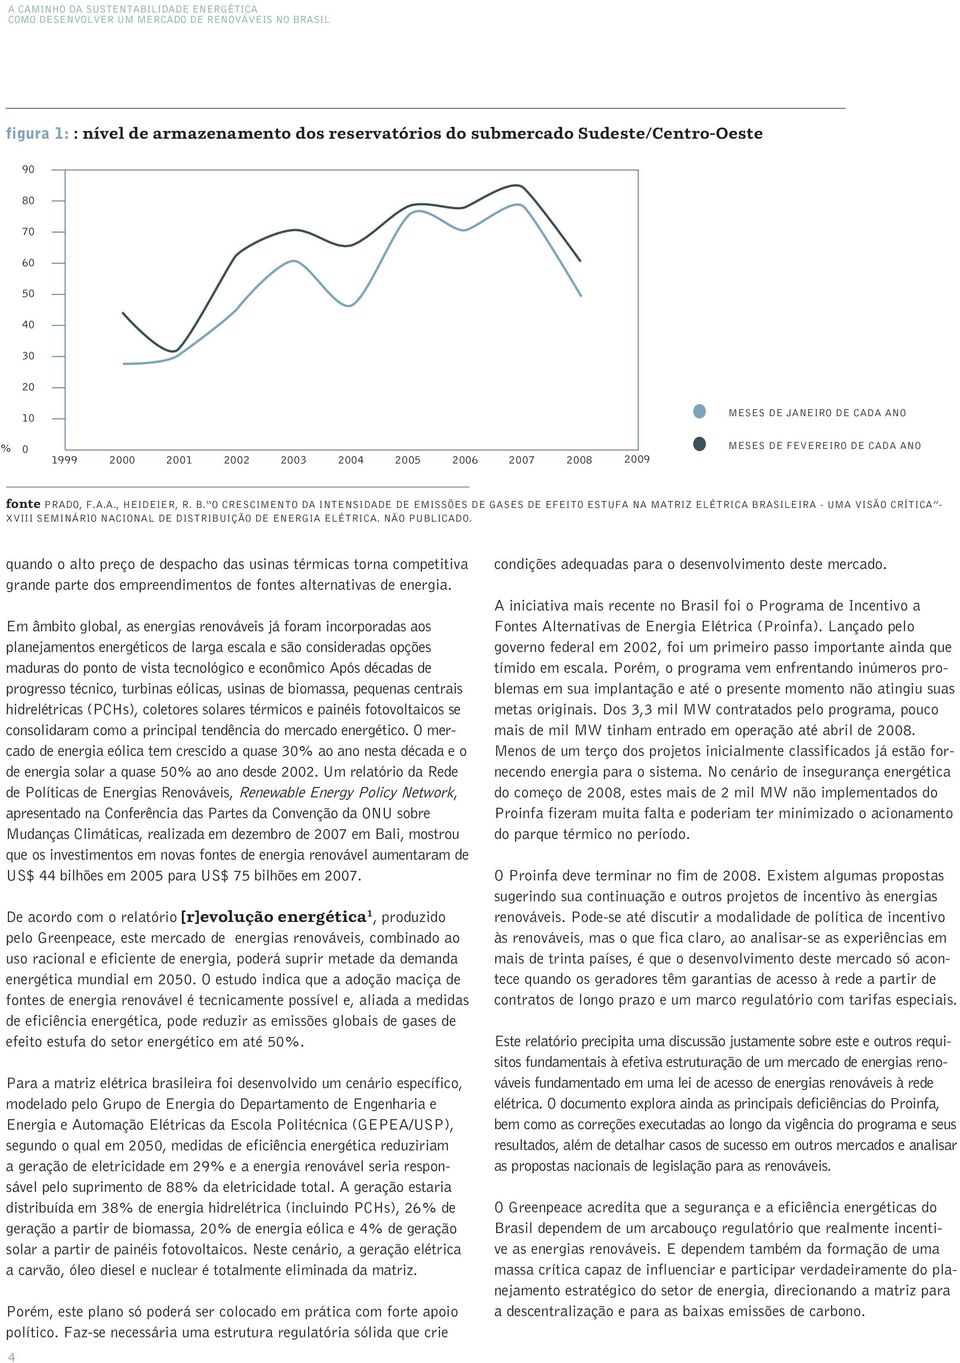 O crescimento da intensidade de emissões de gases de efeito estufa na matriz elétrica brasileira - uma visão crítica - XVIII Seminário Nacional de Distribuição de Energia Elétrica. Não publicado.